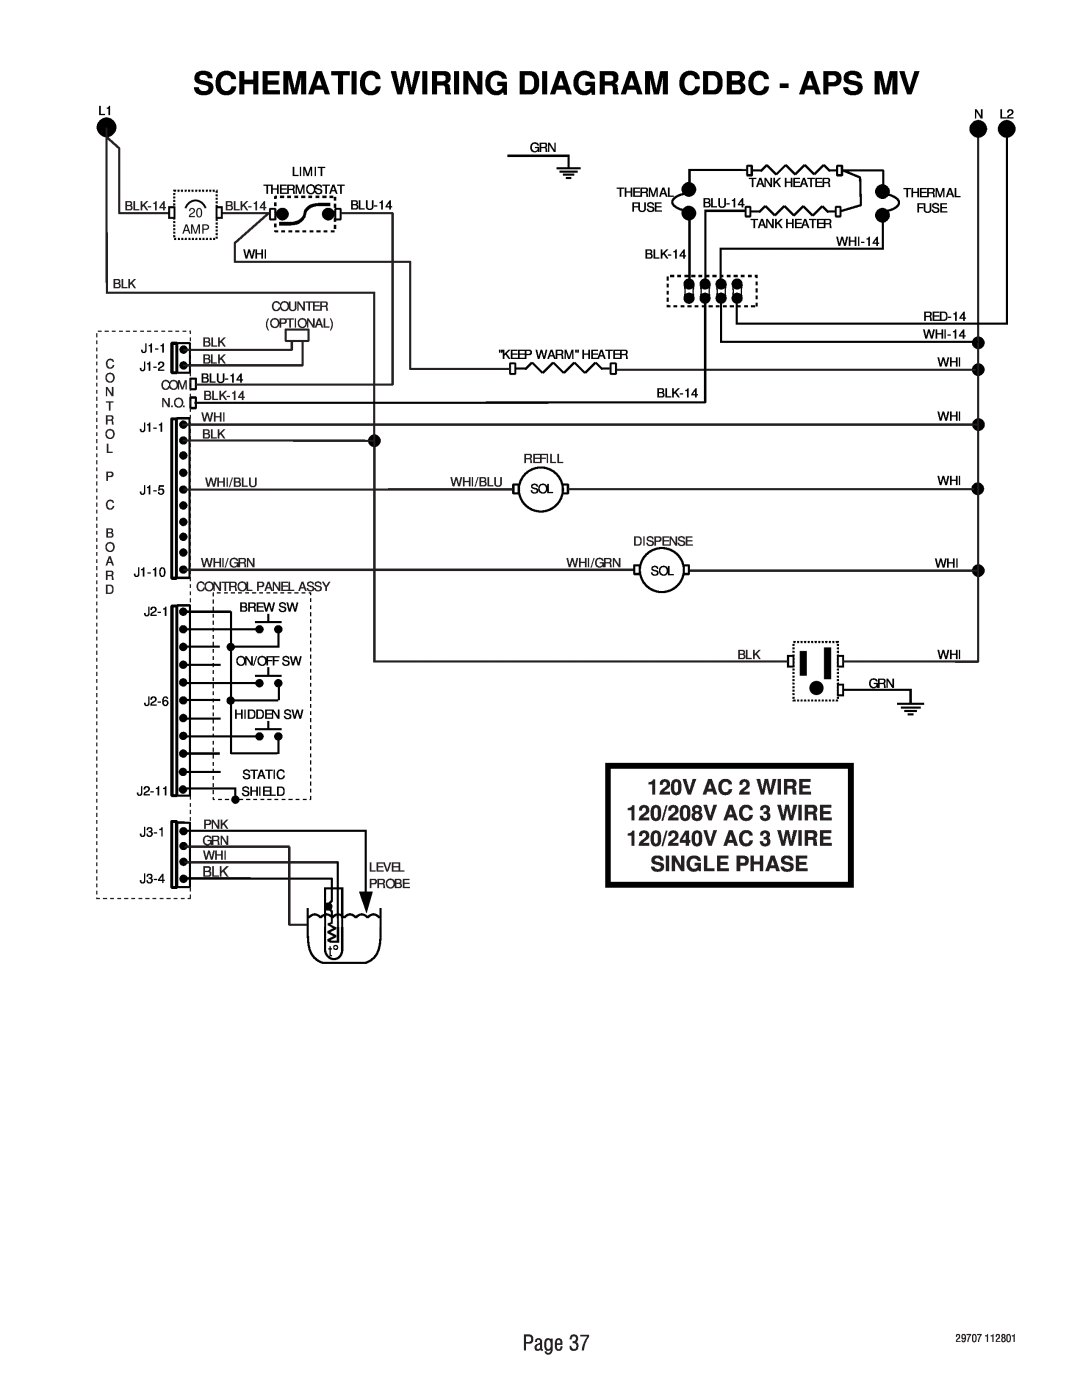 Bunn CDBC-MV, CDBCF-DV, CDBC APS-DV, CDBC-DV Schematic Wiring Diagram Cdbc - Aps Mv, 120V AC 2 WIRE 120/208V AC 3 WIRE 